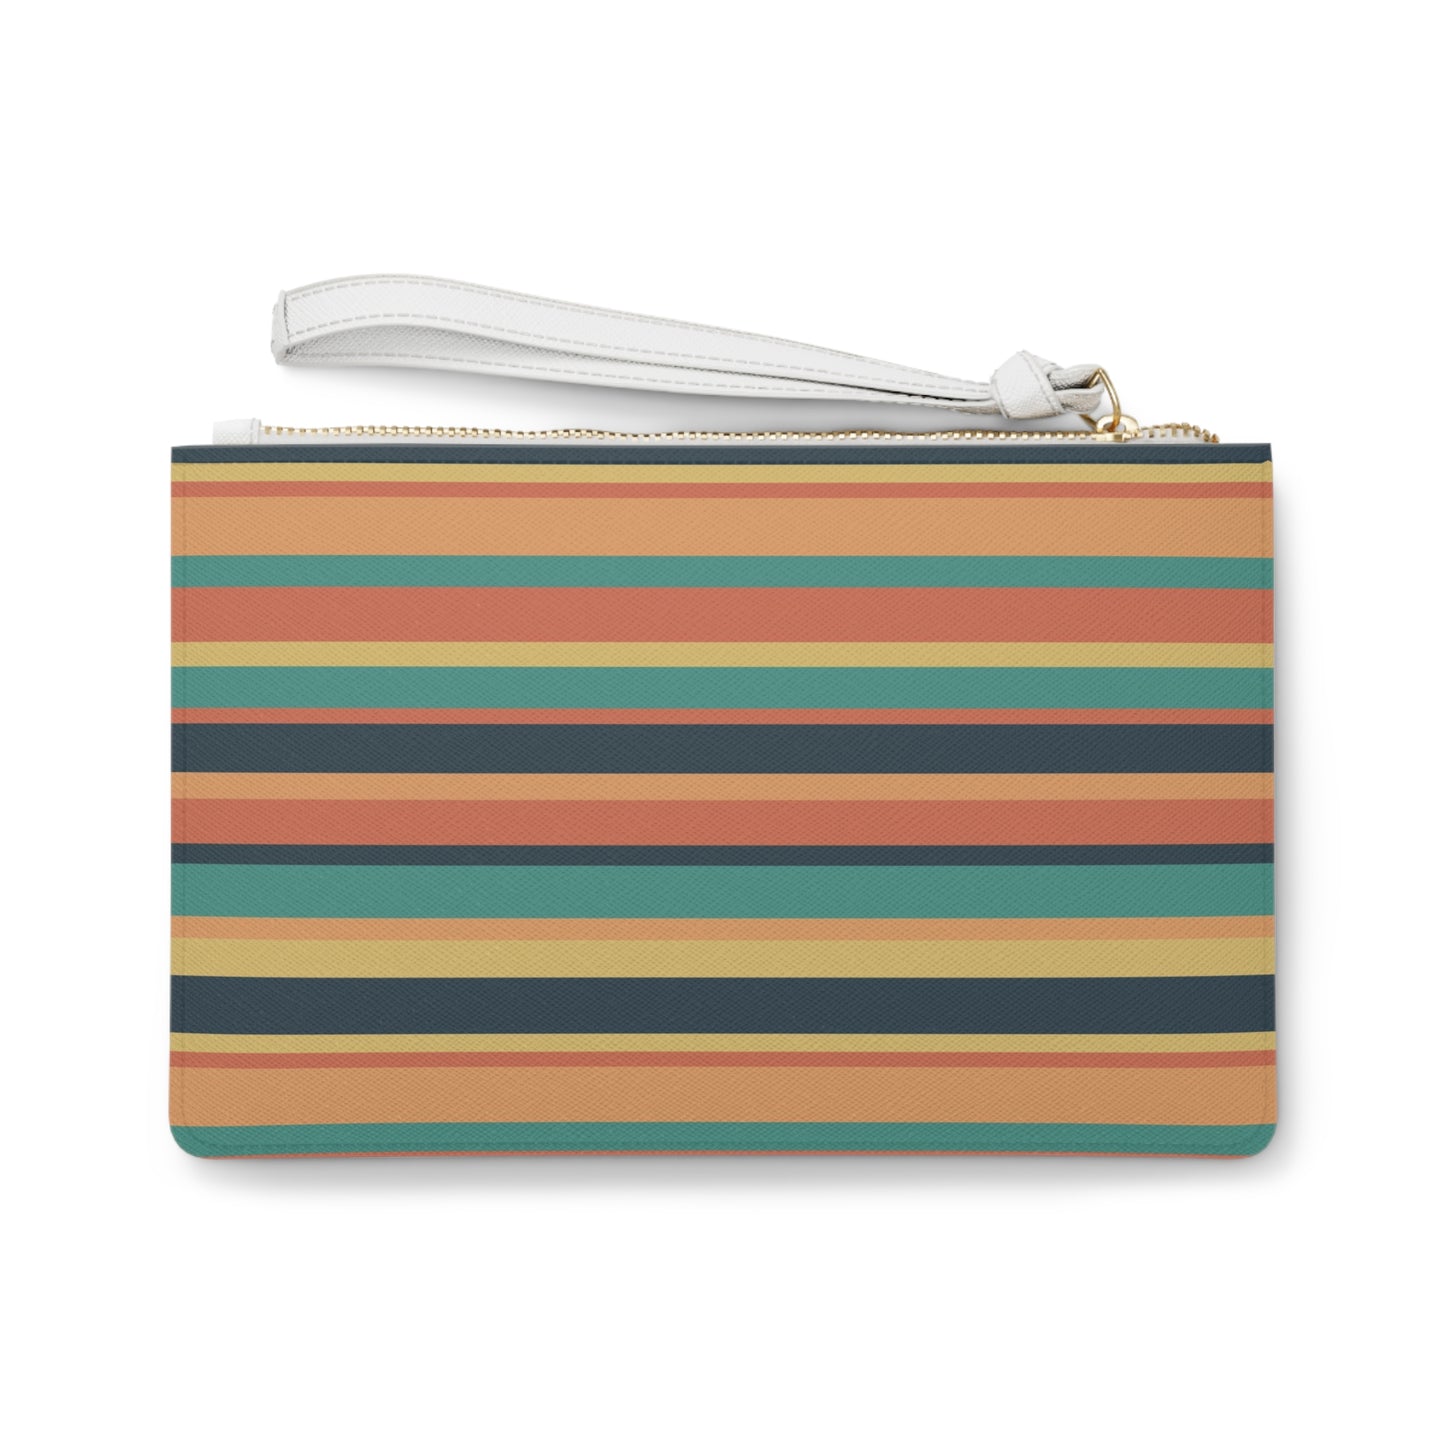 Sunbaked Stripes Clutch Bag